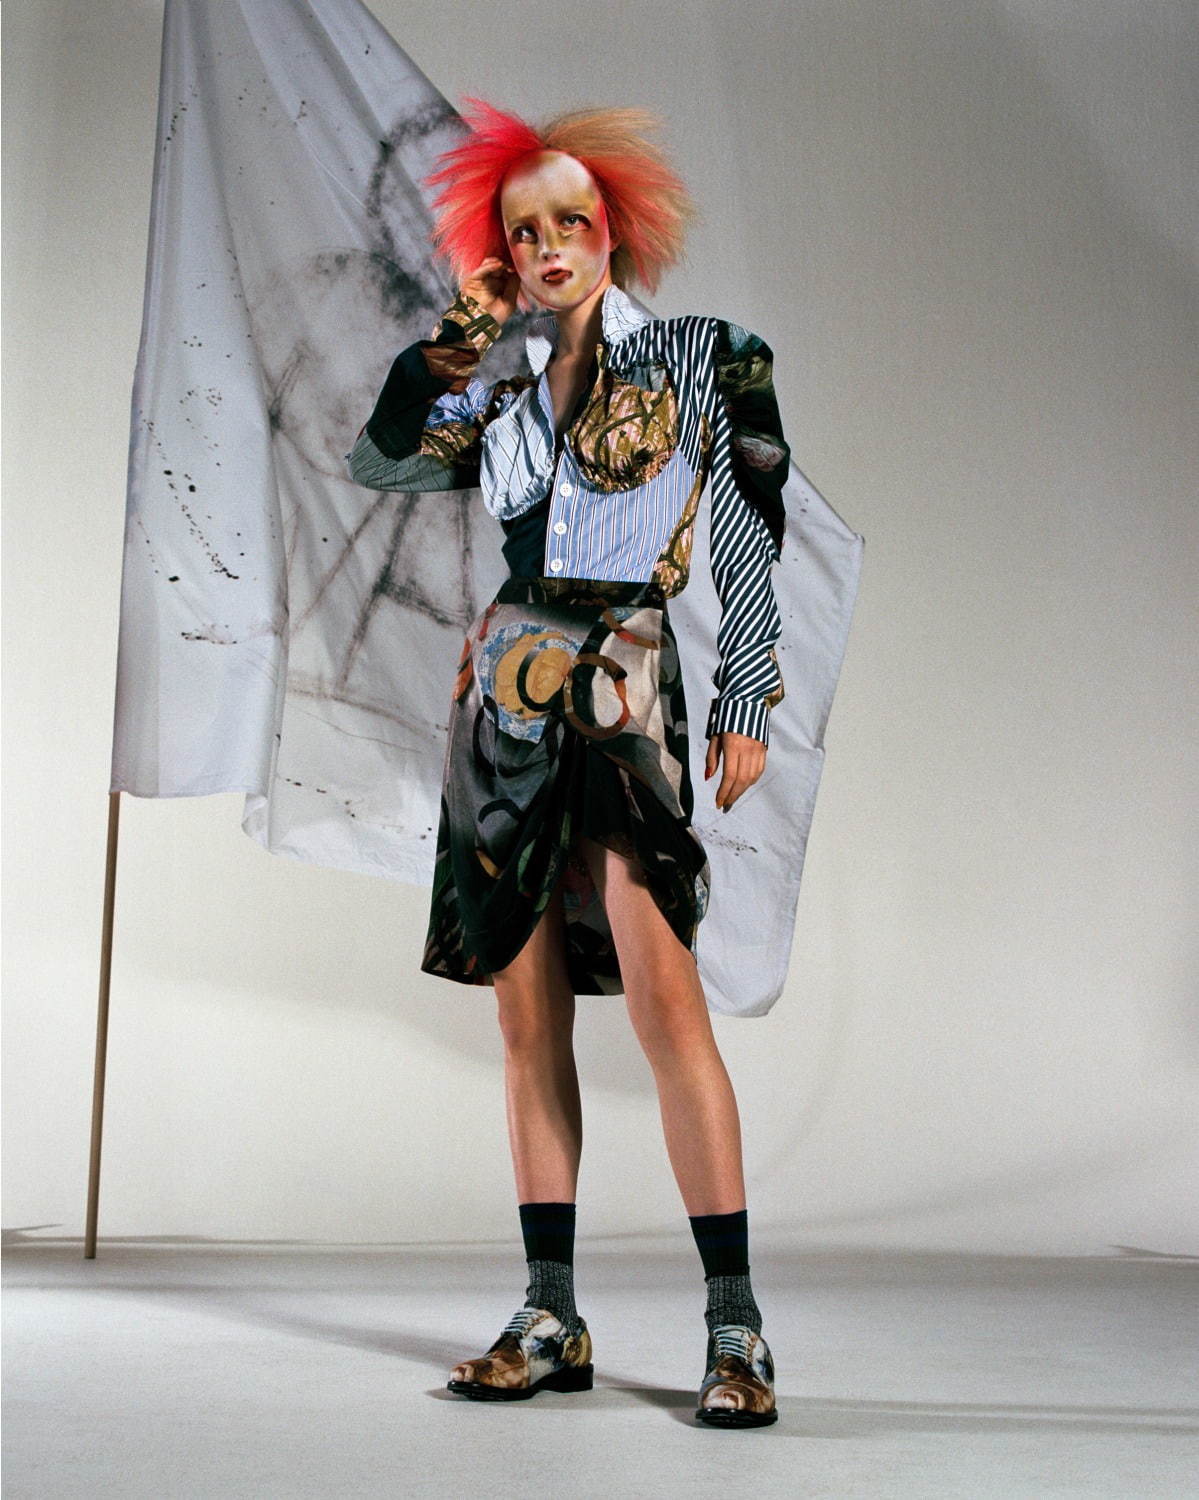 ヴィヴィアン・ウエストウッド(Vivienne Westwood) 2020年春夏ウィメンズ&メンズコレクション  - 写真13